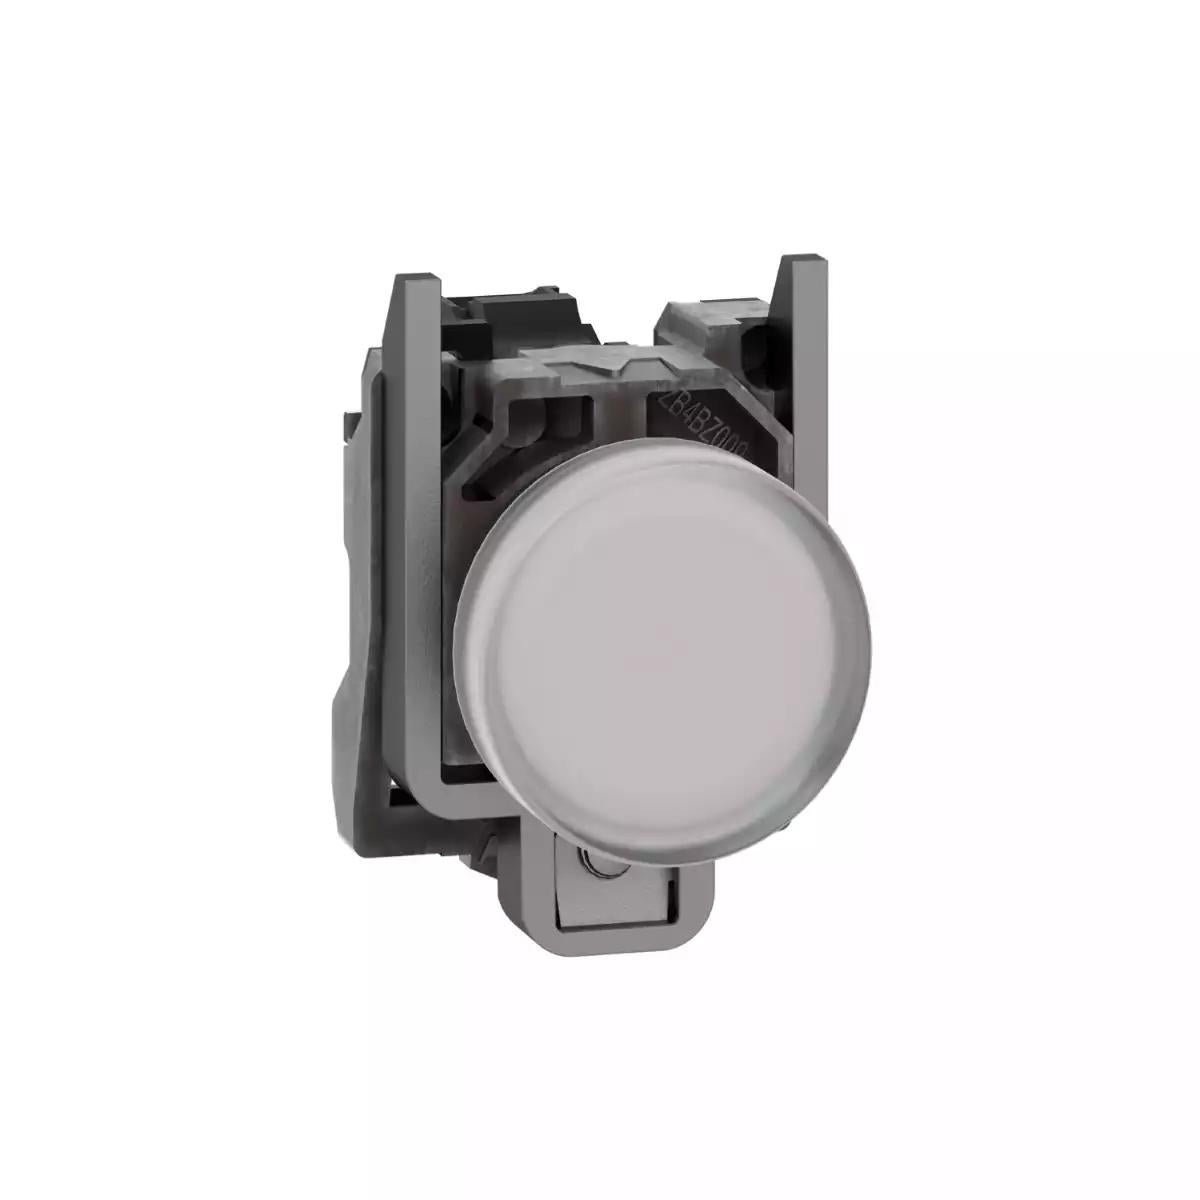 Pilot light, Harmony XB4, metal, white, 22mm, plain lens with BA9s bulb, lt 250V